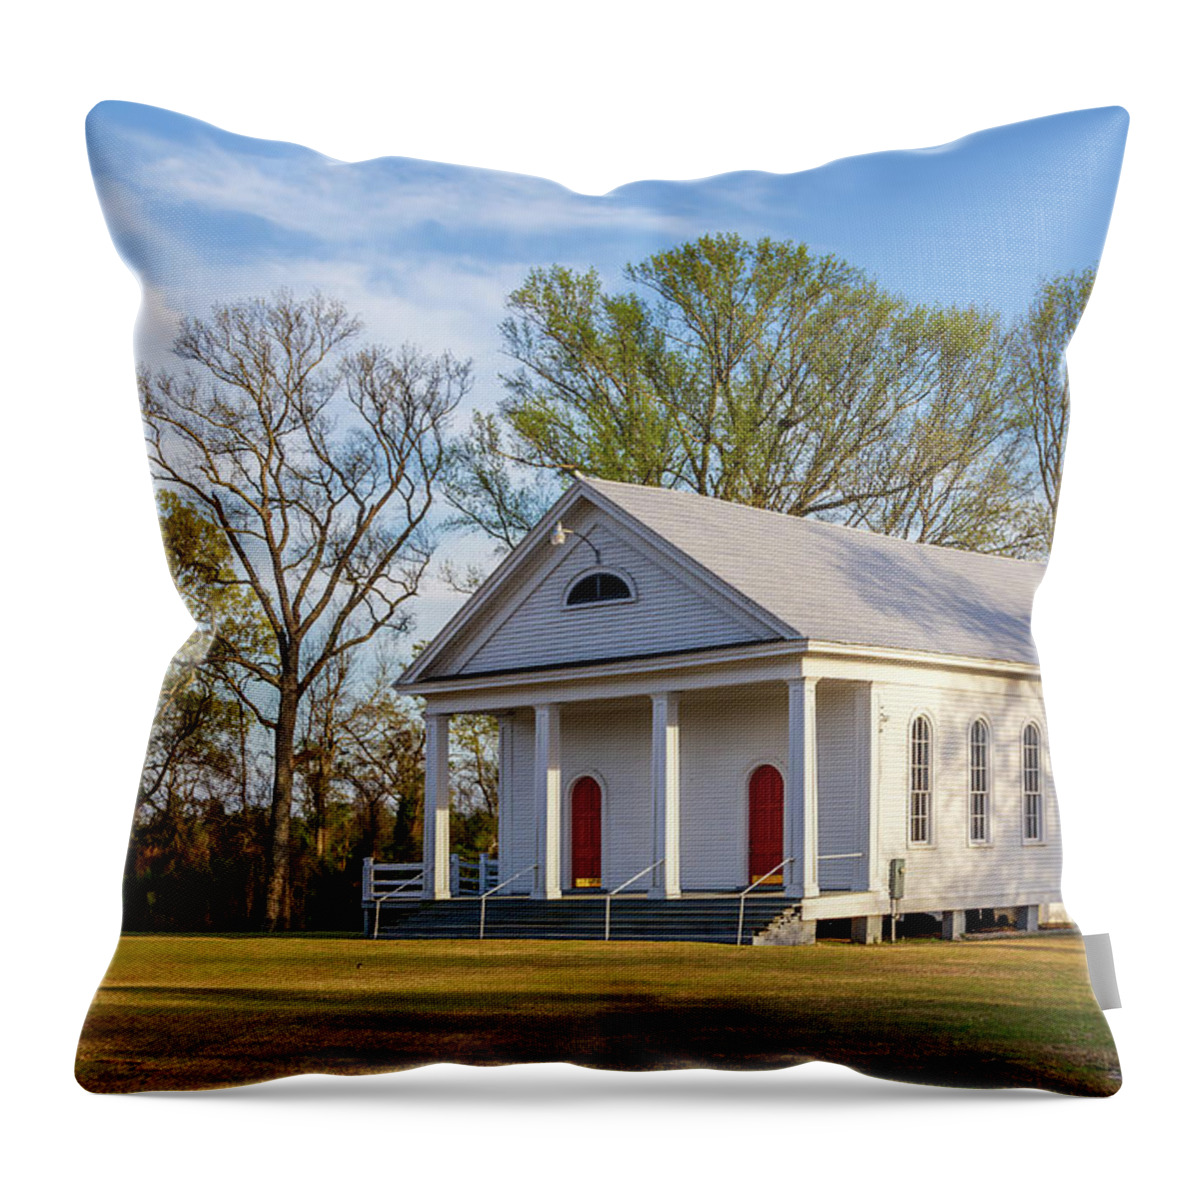 2021 Throw Pillow featuring the photograph Spann Methodist Church by Charles Hite